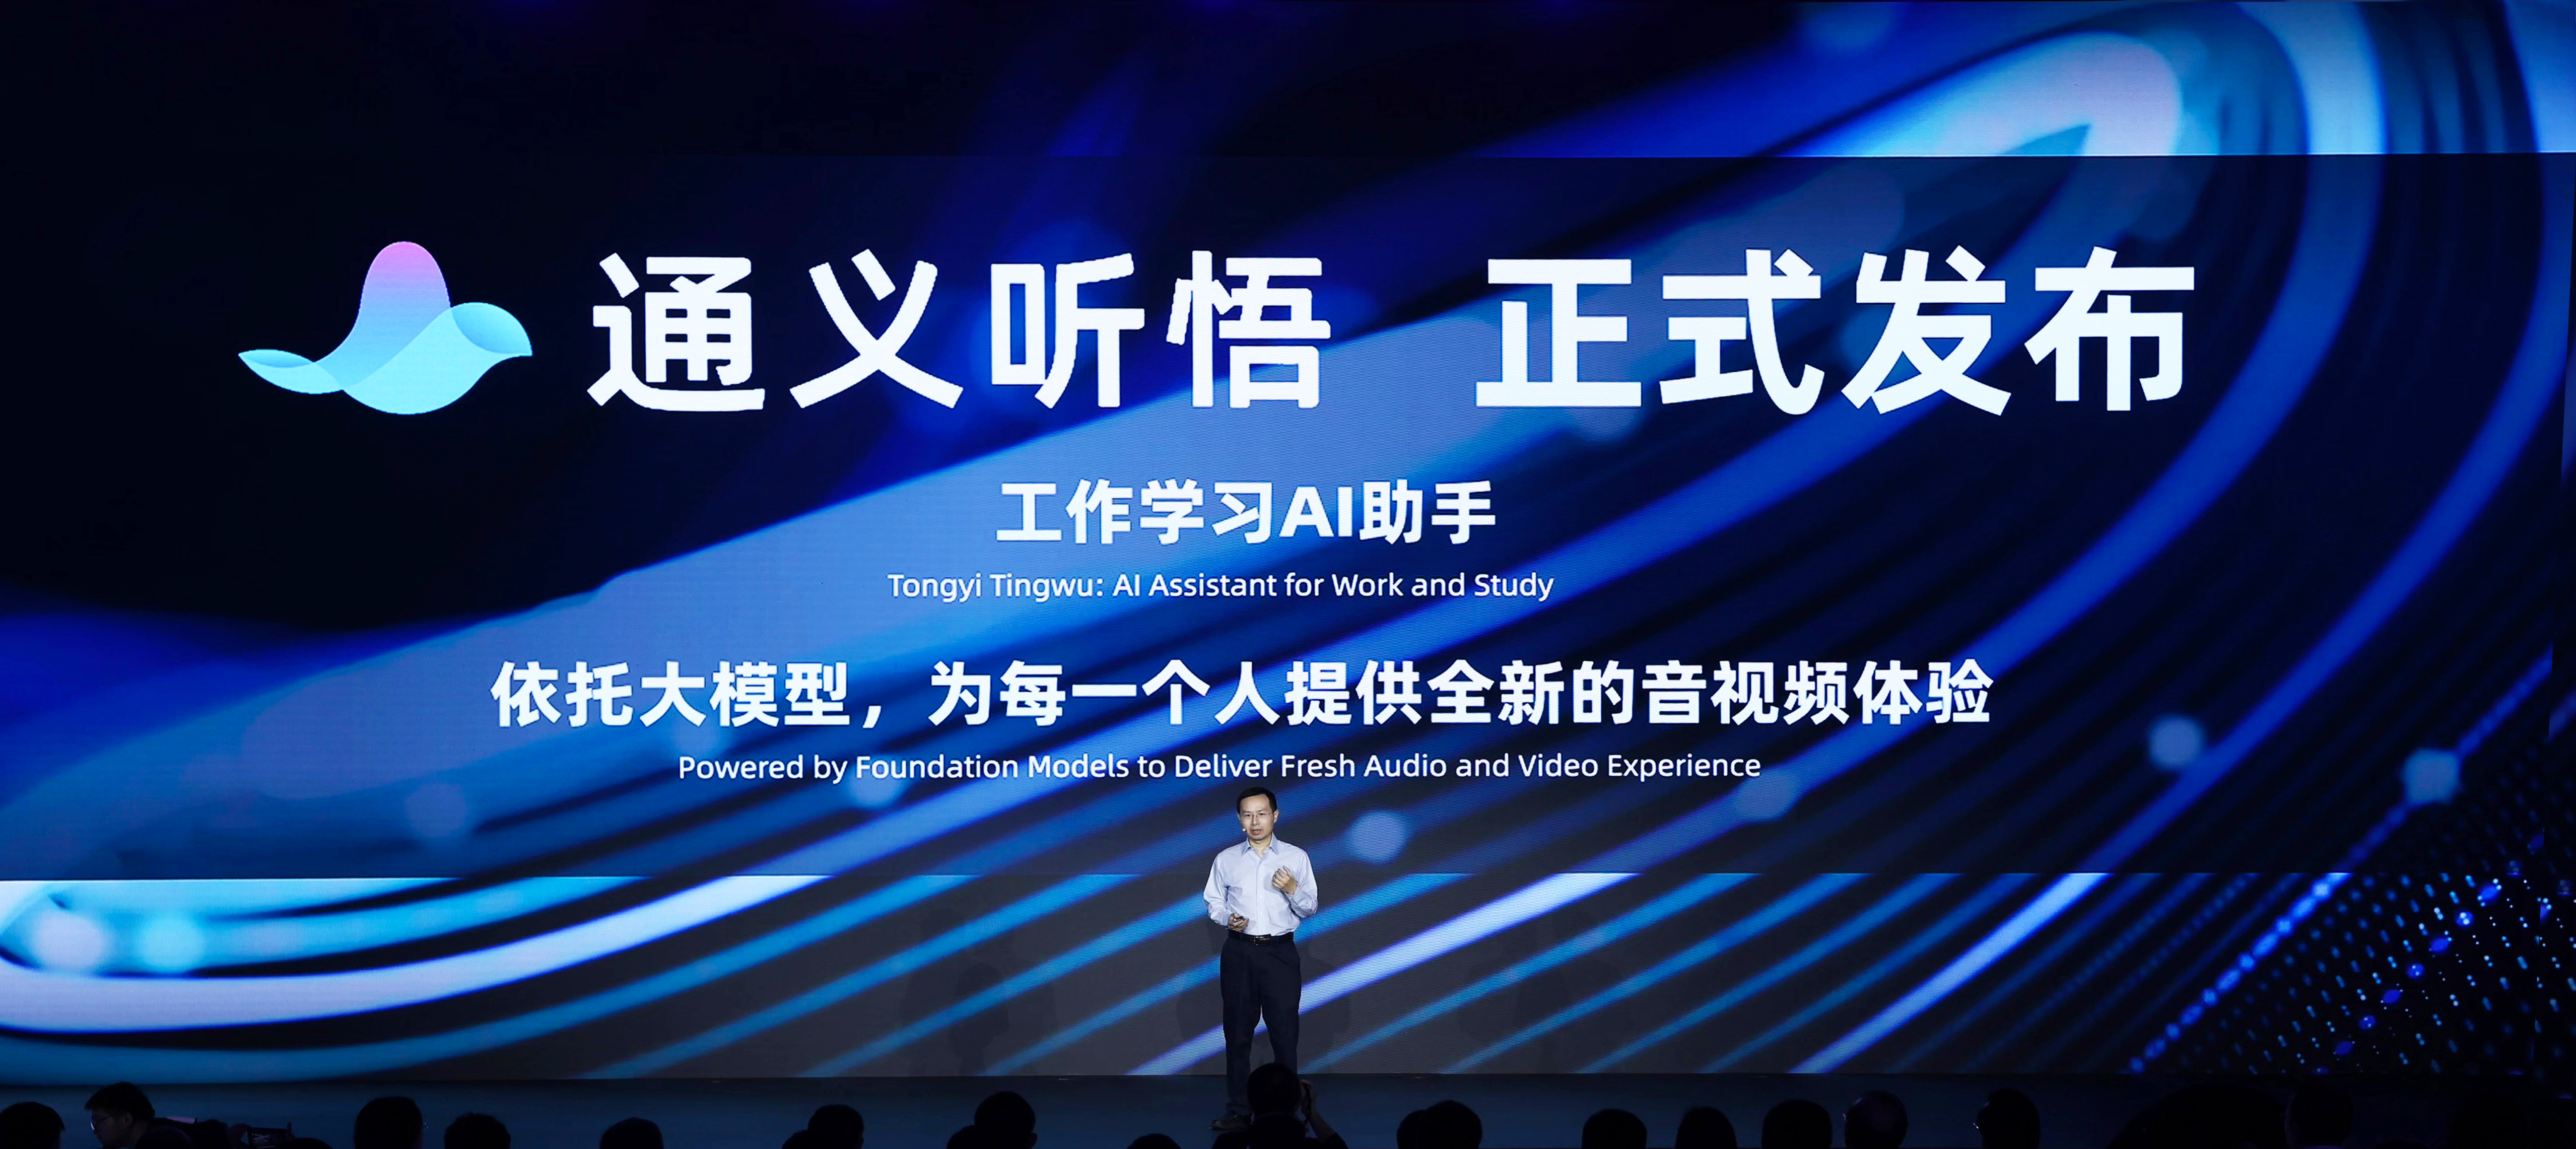 Alibaba Cloud นำ Tongyi Qianwen ทำงานร่วมกับ AI Assistant พิ่มประสิทธิภาพการทำงาน